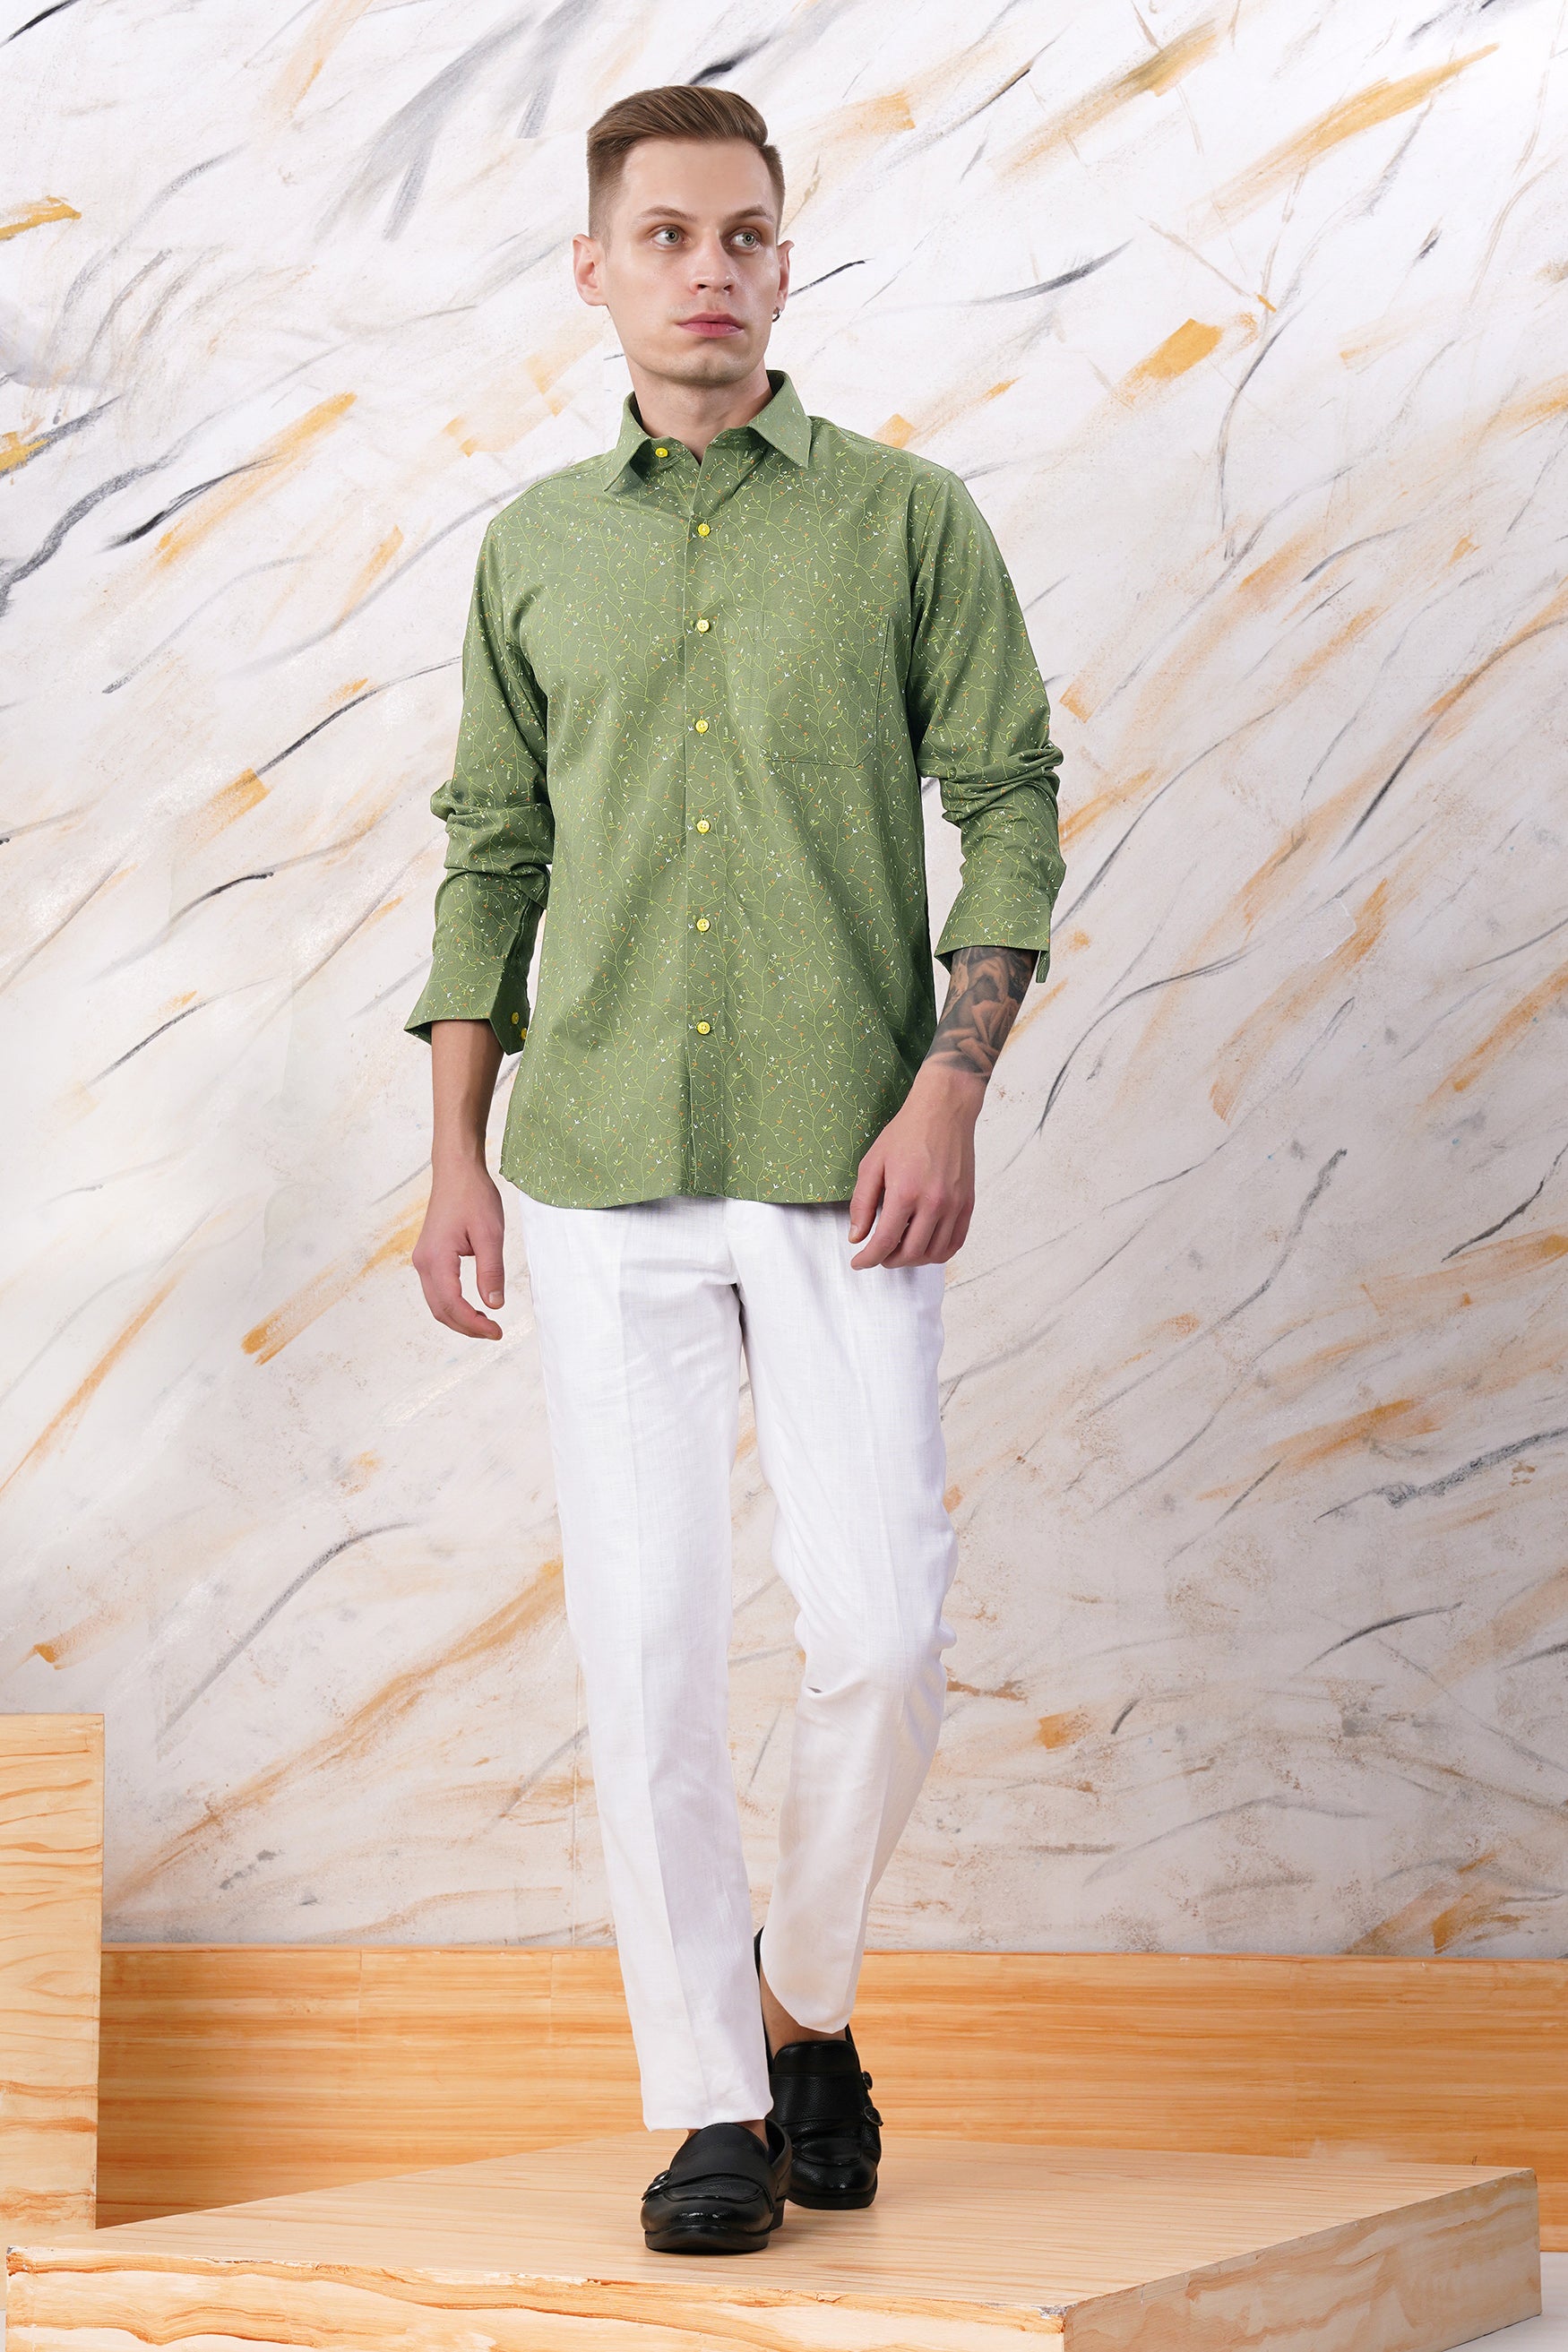 Asparagus Green Printed Twill Premium Cotton Shirt